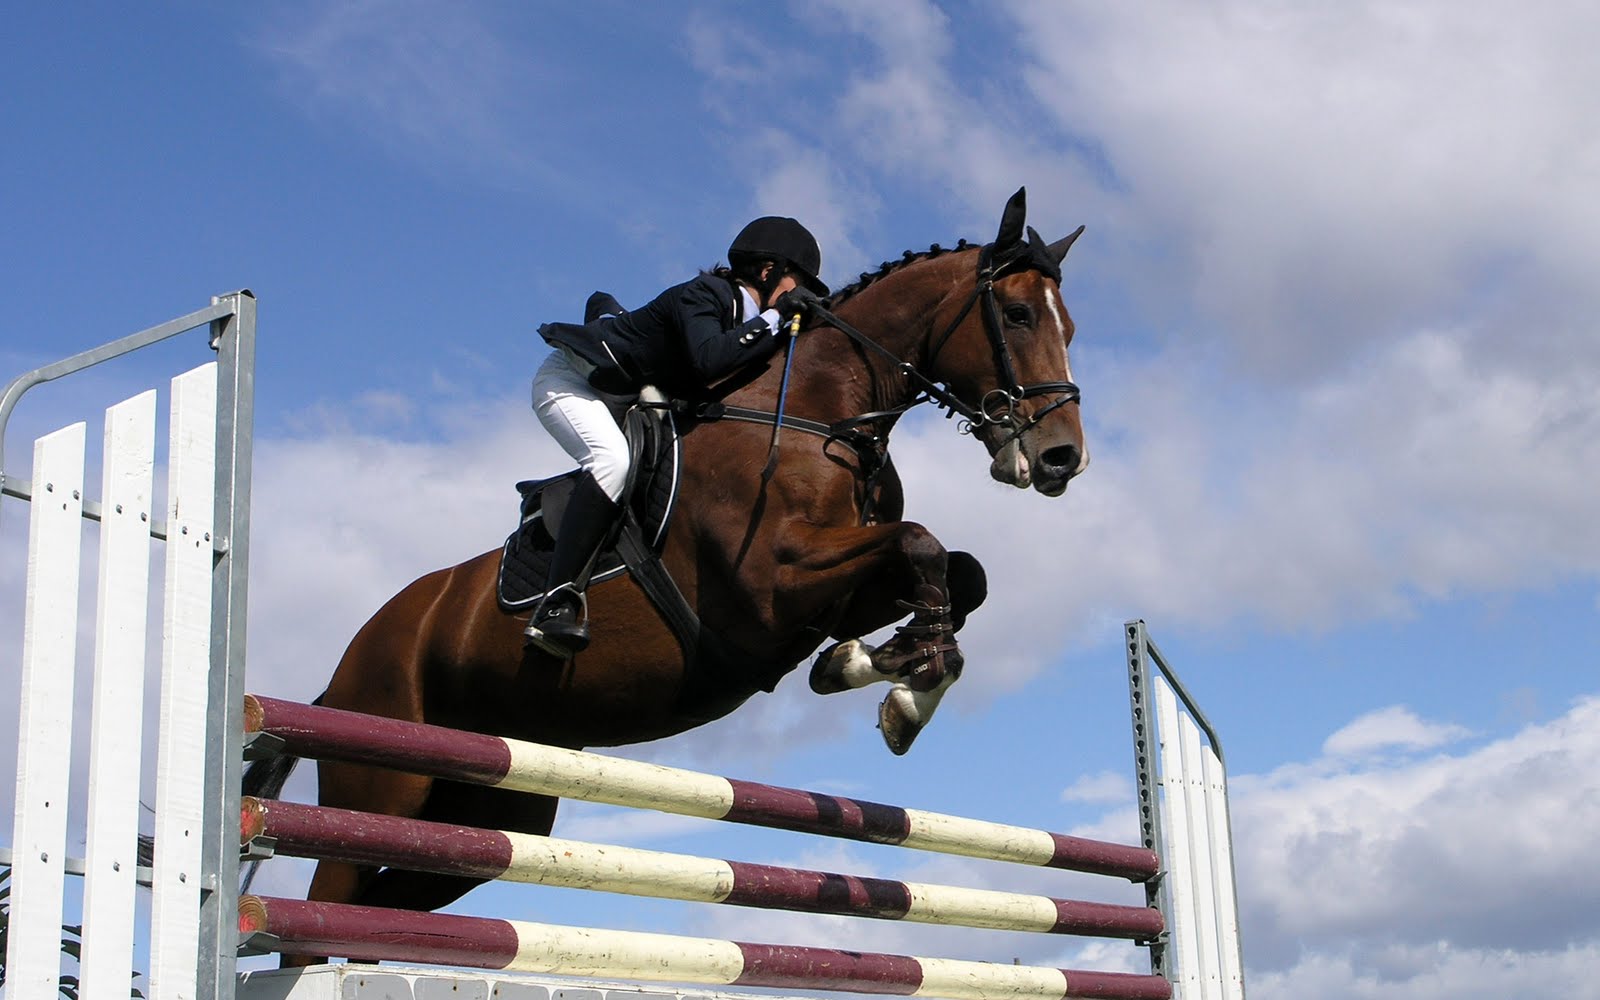 11 Esportes com Cavalos para conhecer e se encantar